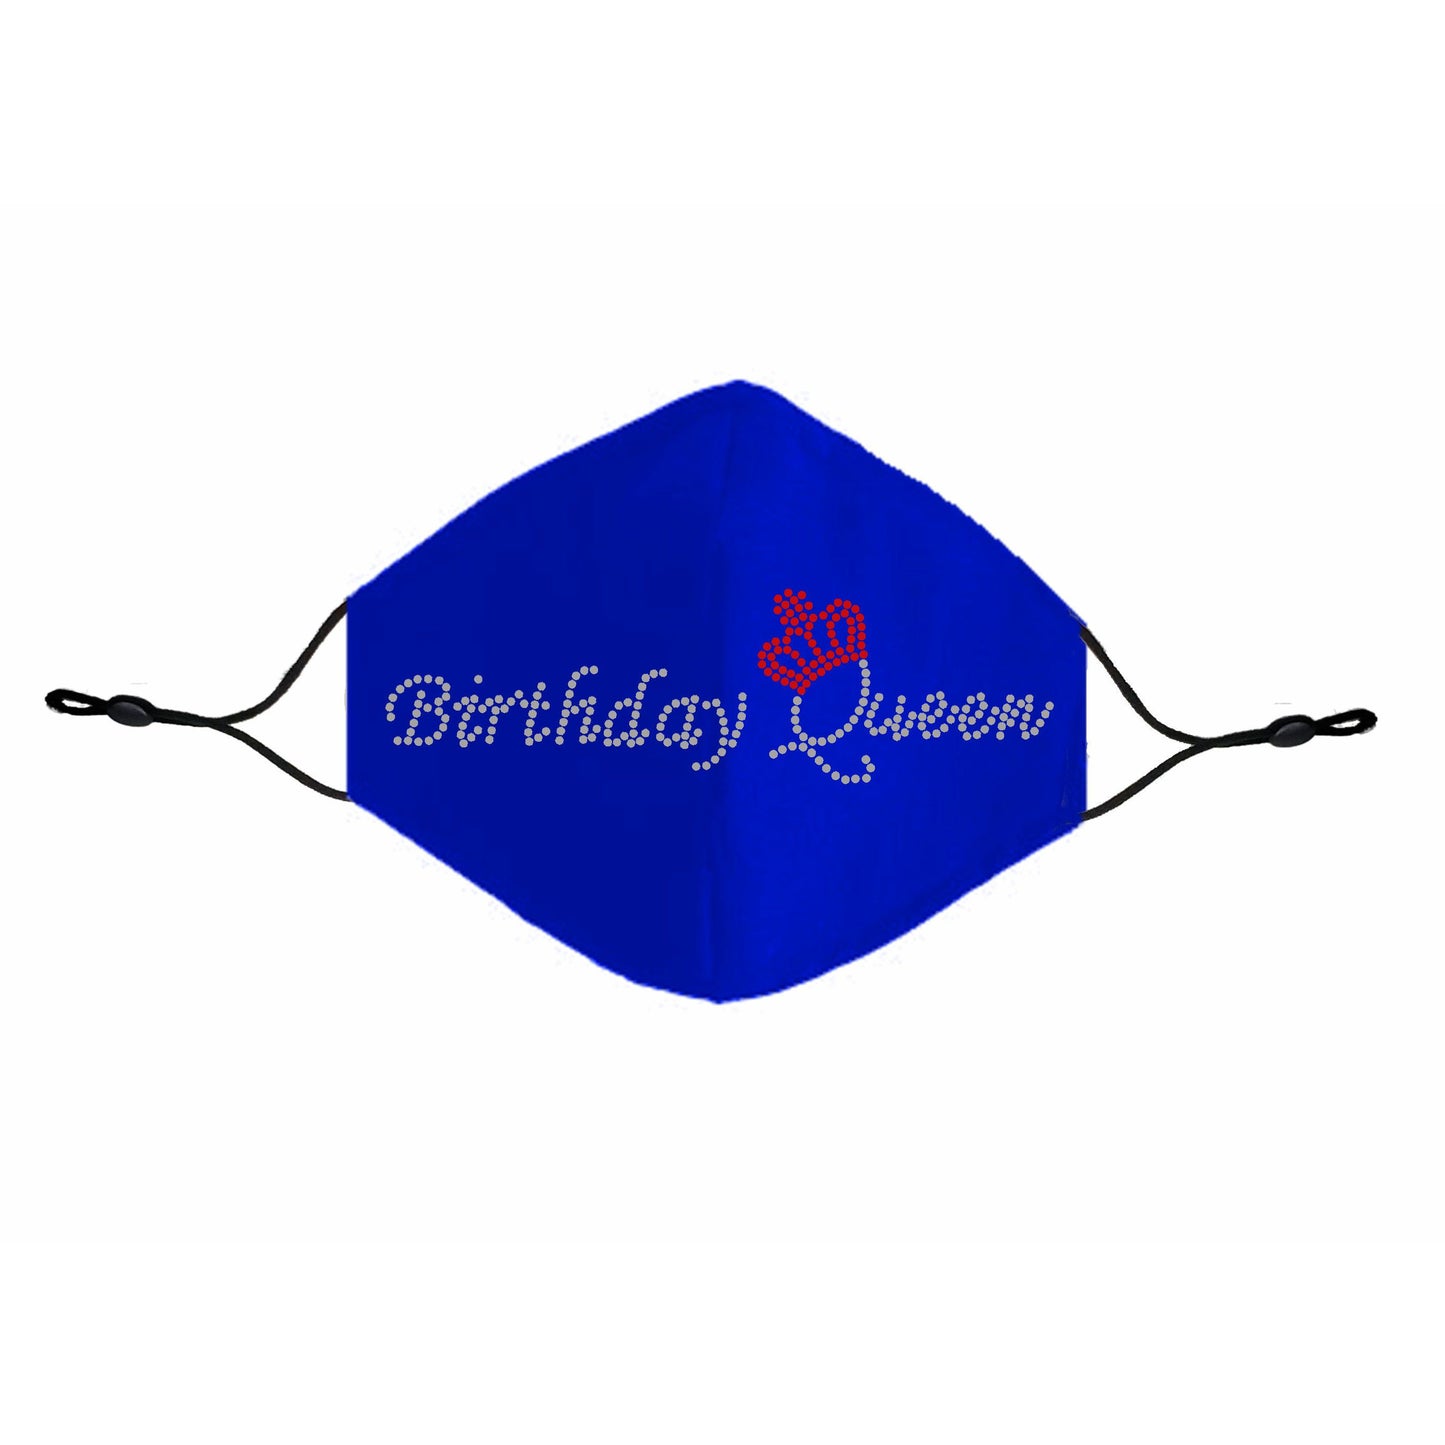 Birthday Queen Rhinestone Cloth Face Mask